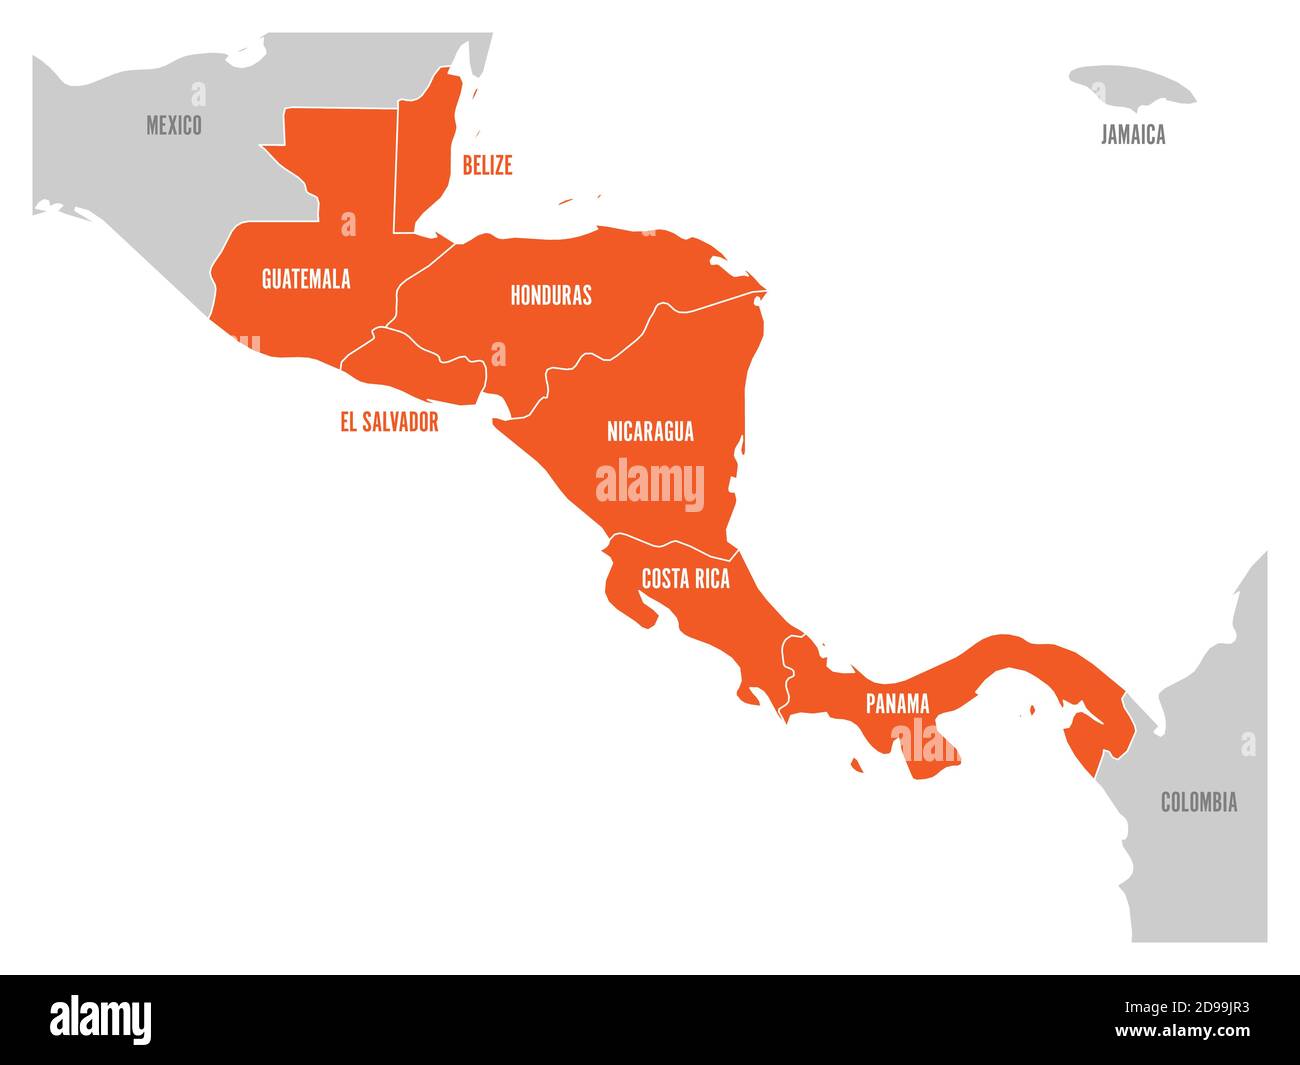 Mappa della regione dell'America centrale con gli stati dell'america centrale evidenziati in rosso. Etichette del nome del paese. Semplice illustrazione vettoriale piatta. Illustrazione Vettoriale